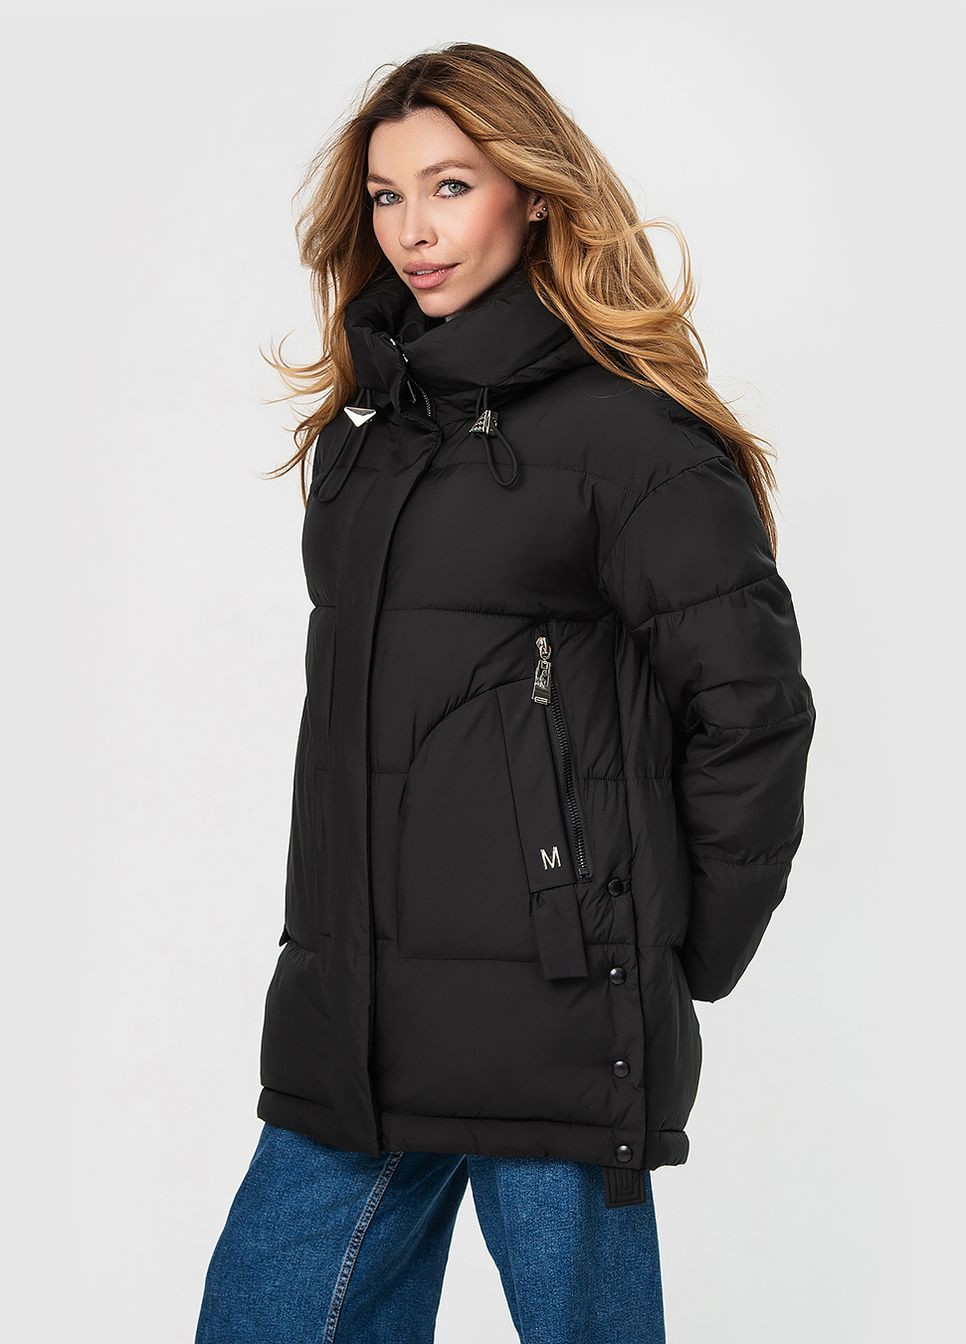 Черная зимняя куртка з капюшоном модель Visdeer 3168